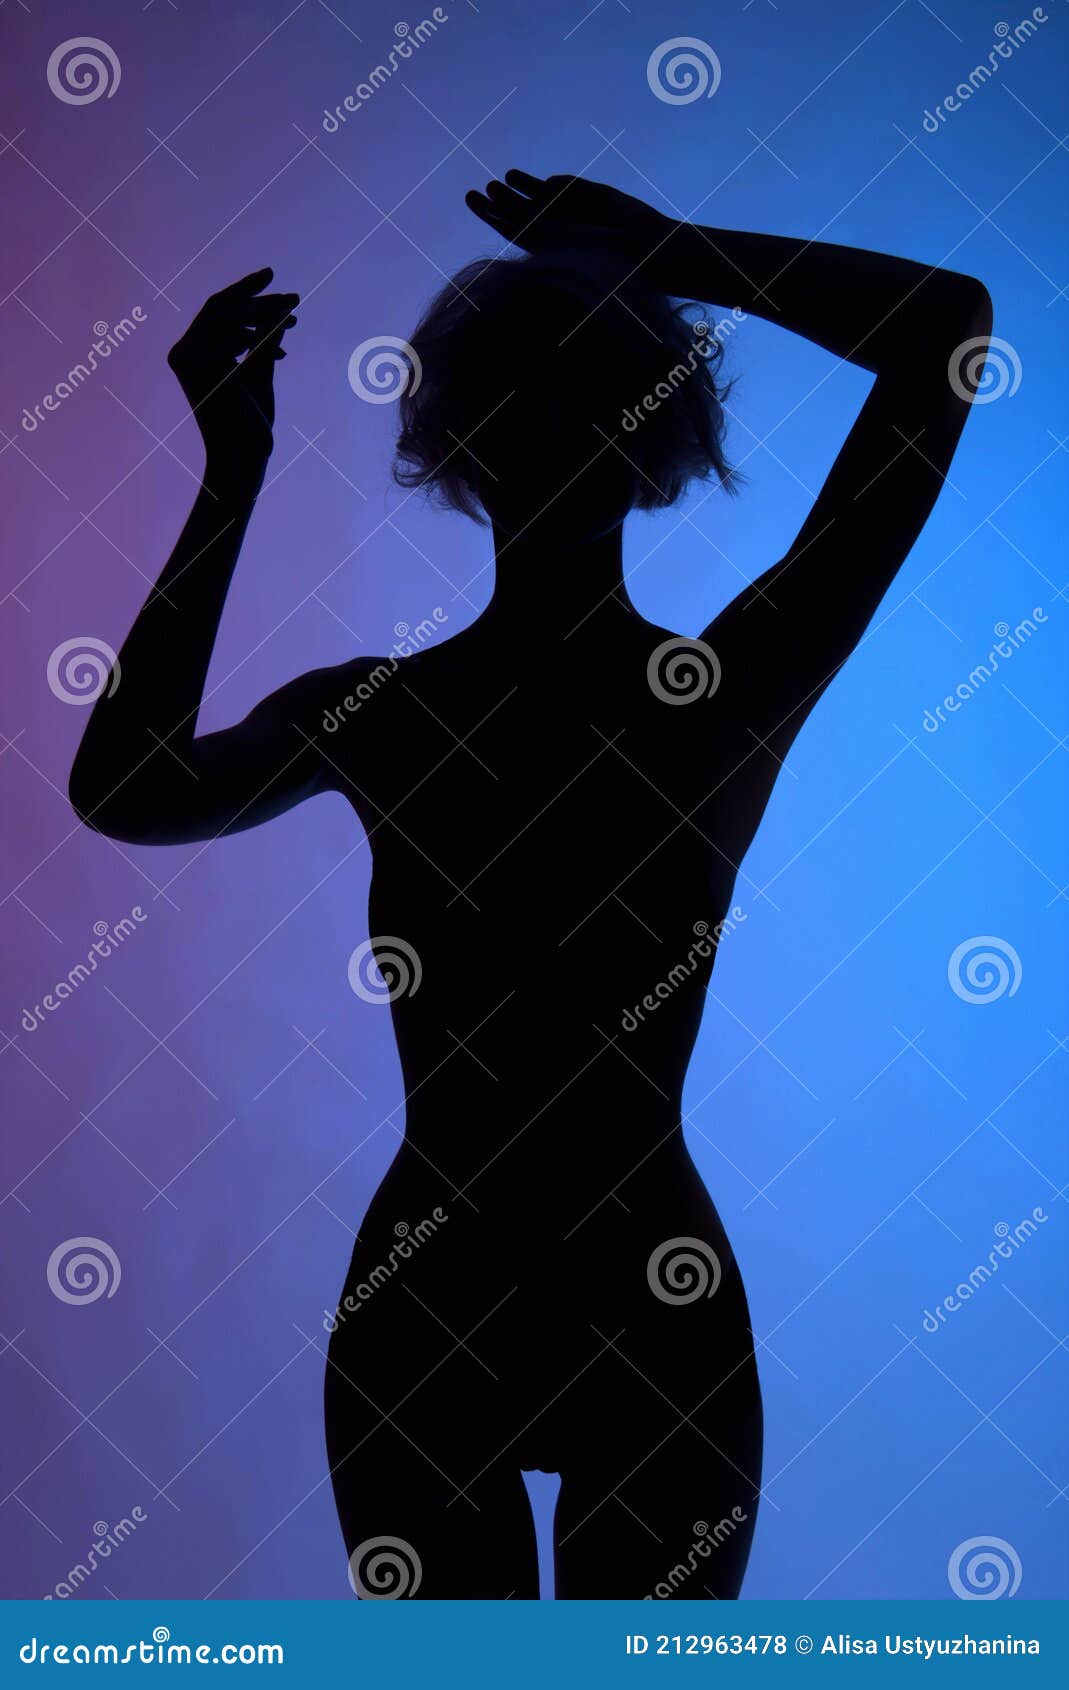 фото голых частей тела девушки